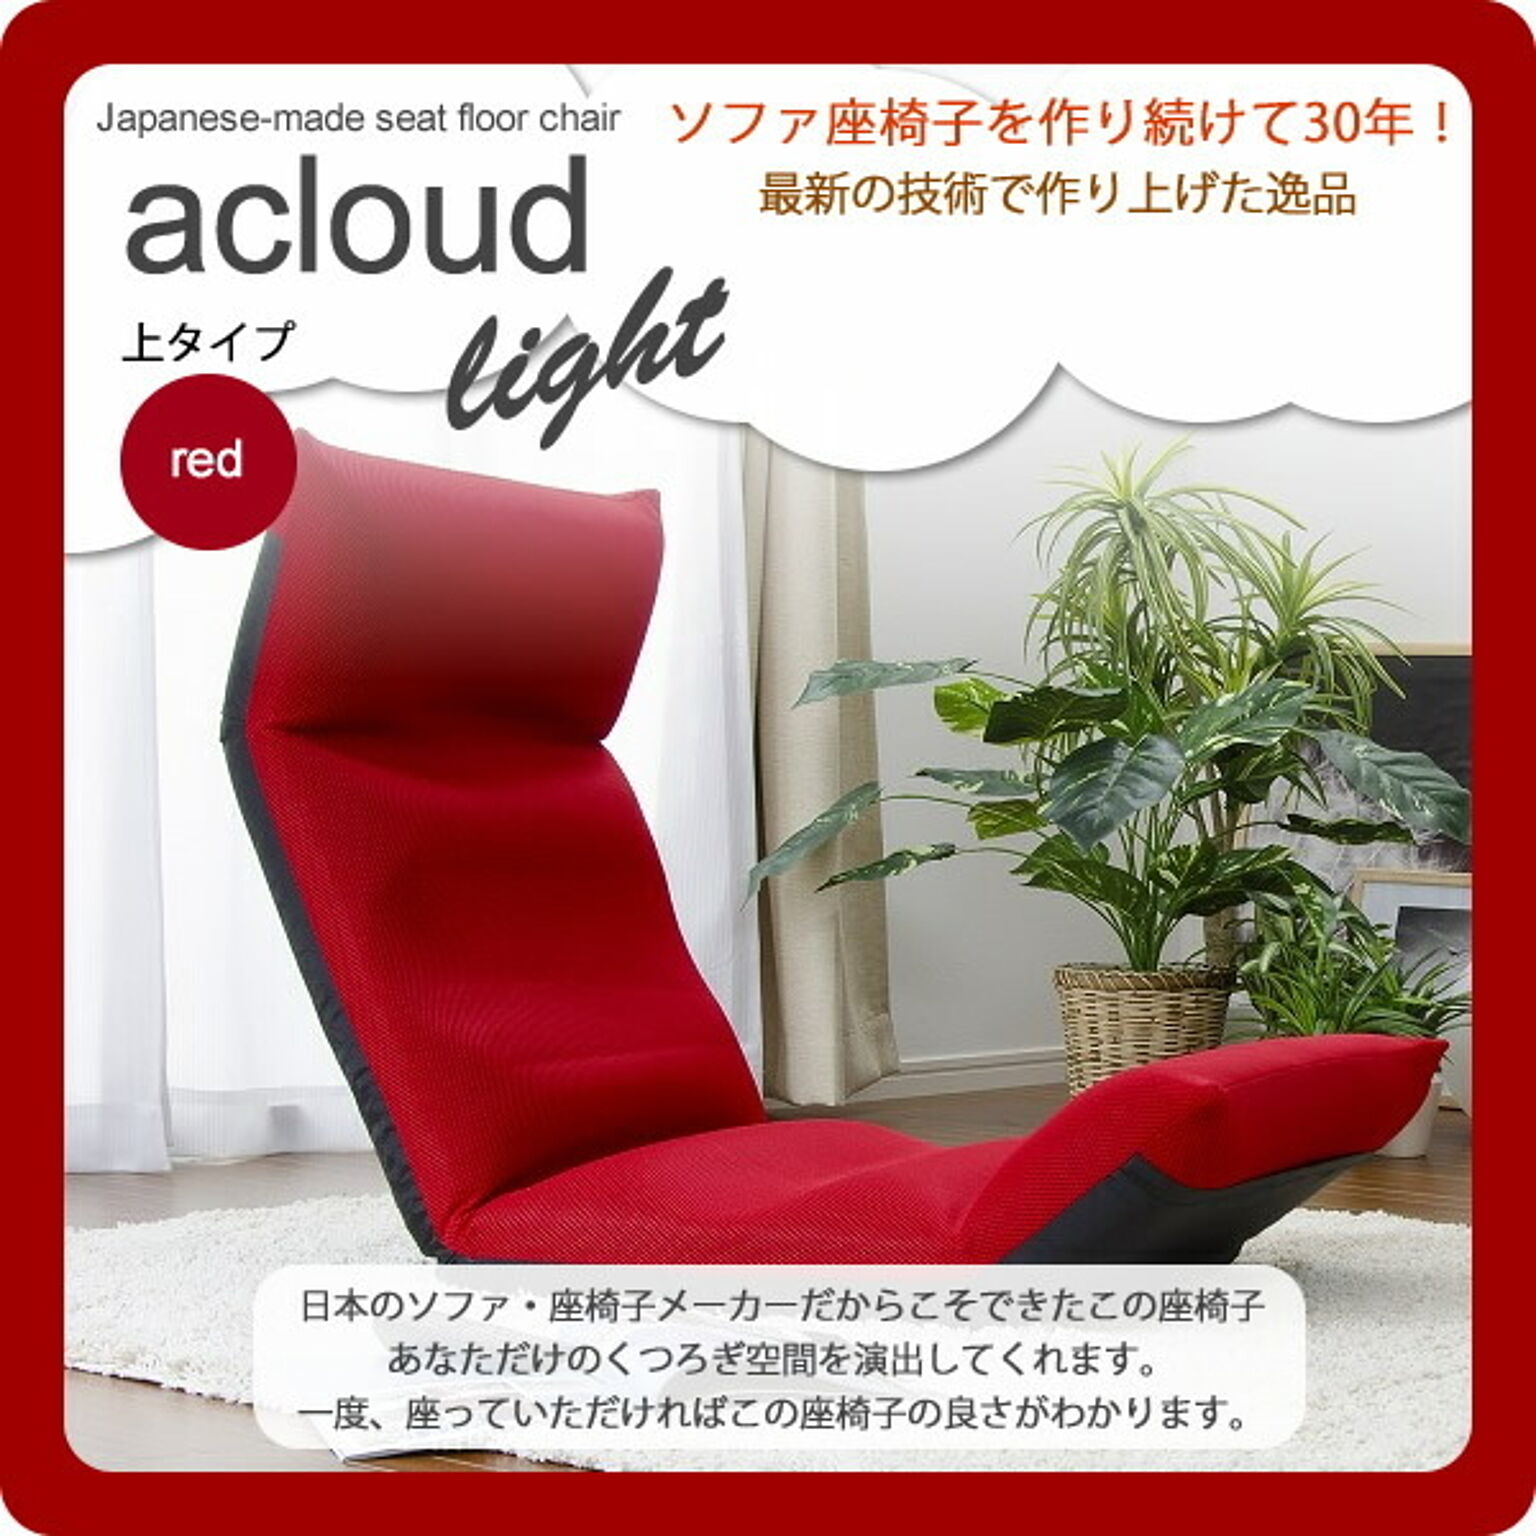 アクラウド LIGHT 日本製フロア座椅子 上タイプ レッド